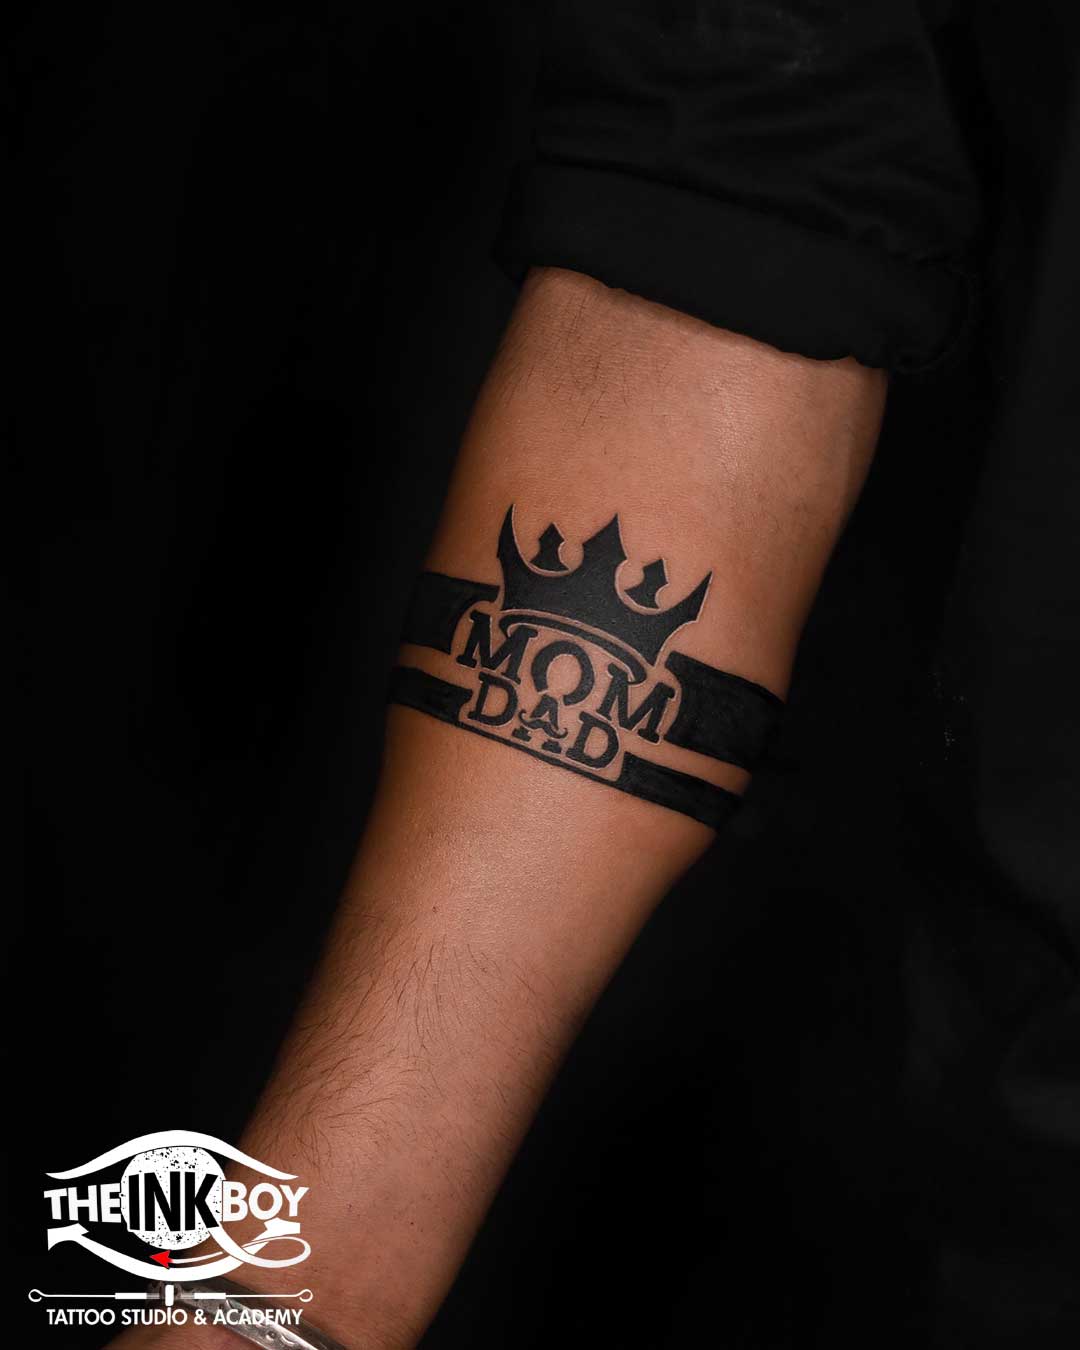 Mom dad tattoo in armband tattoo design 🤟 Call 8657202262 #31tattoostudio # tattoo #tattoos #ink #inked #art #tattooartist #tattooar... | Instagram